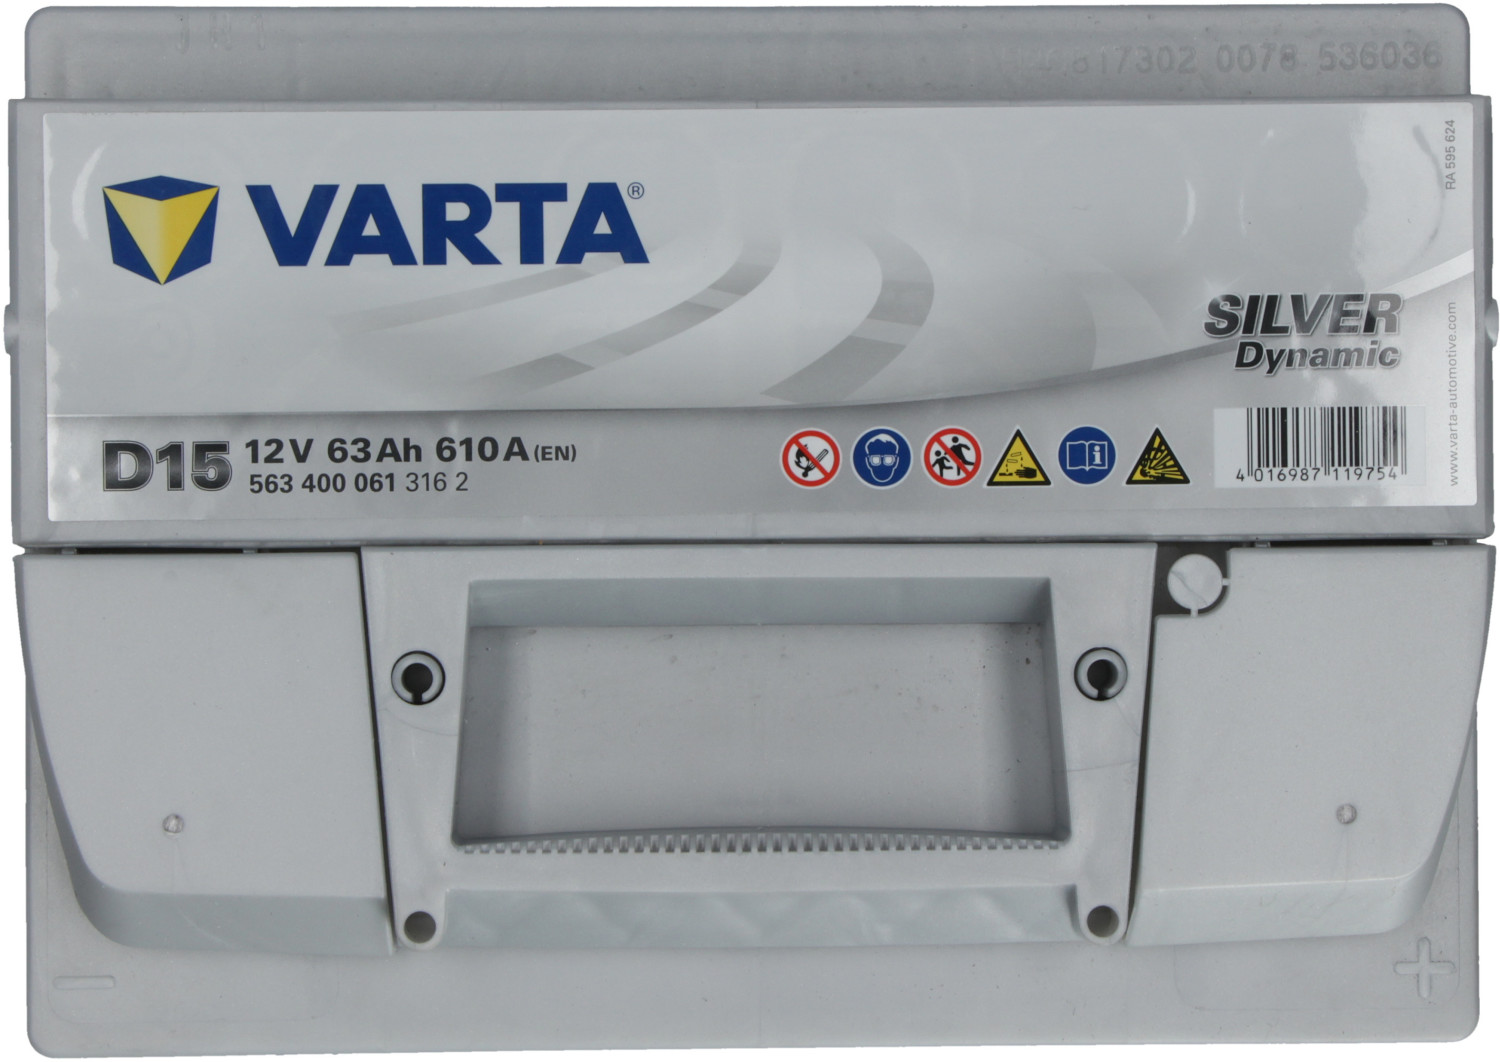 Varta D15 12V 63Ah 610A/EN Startbatteri